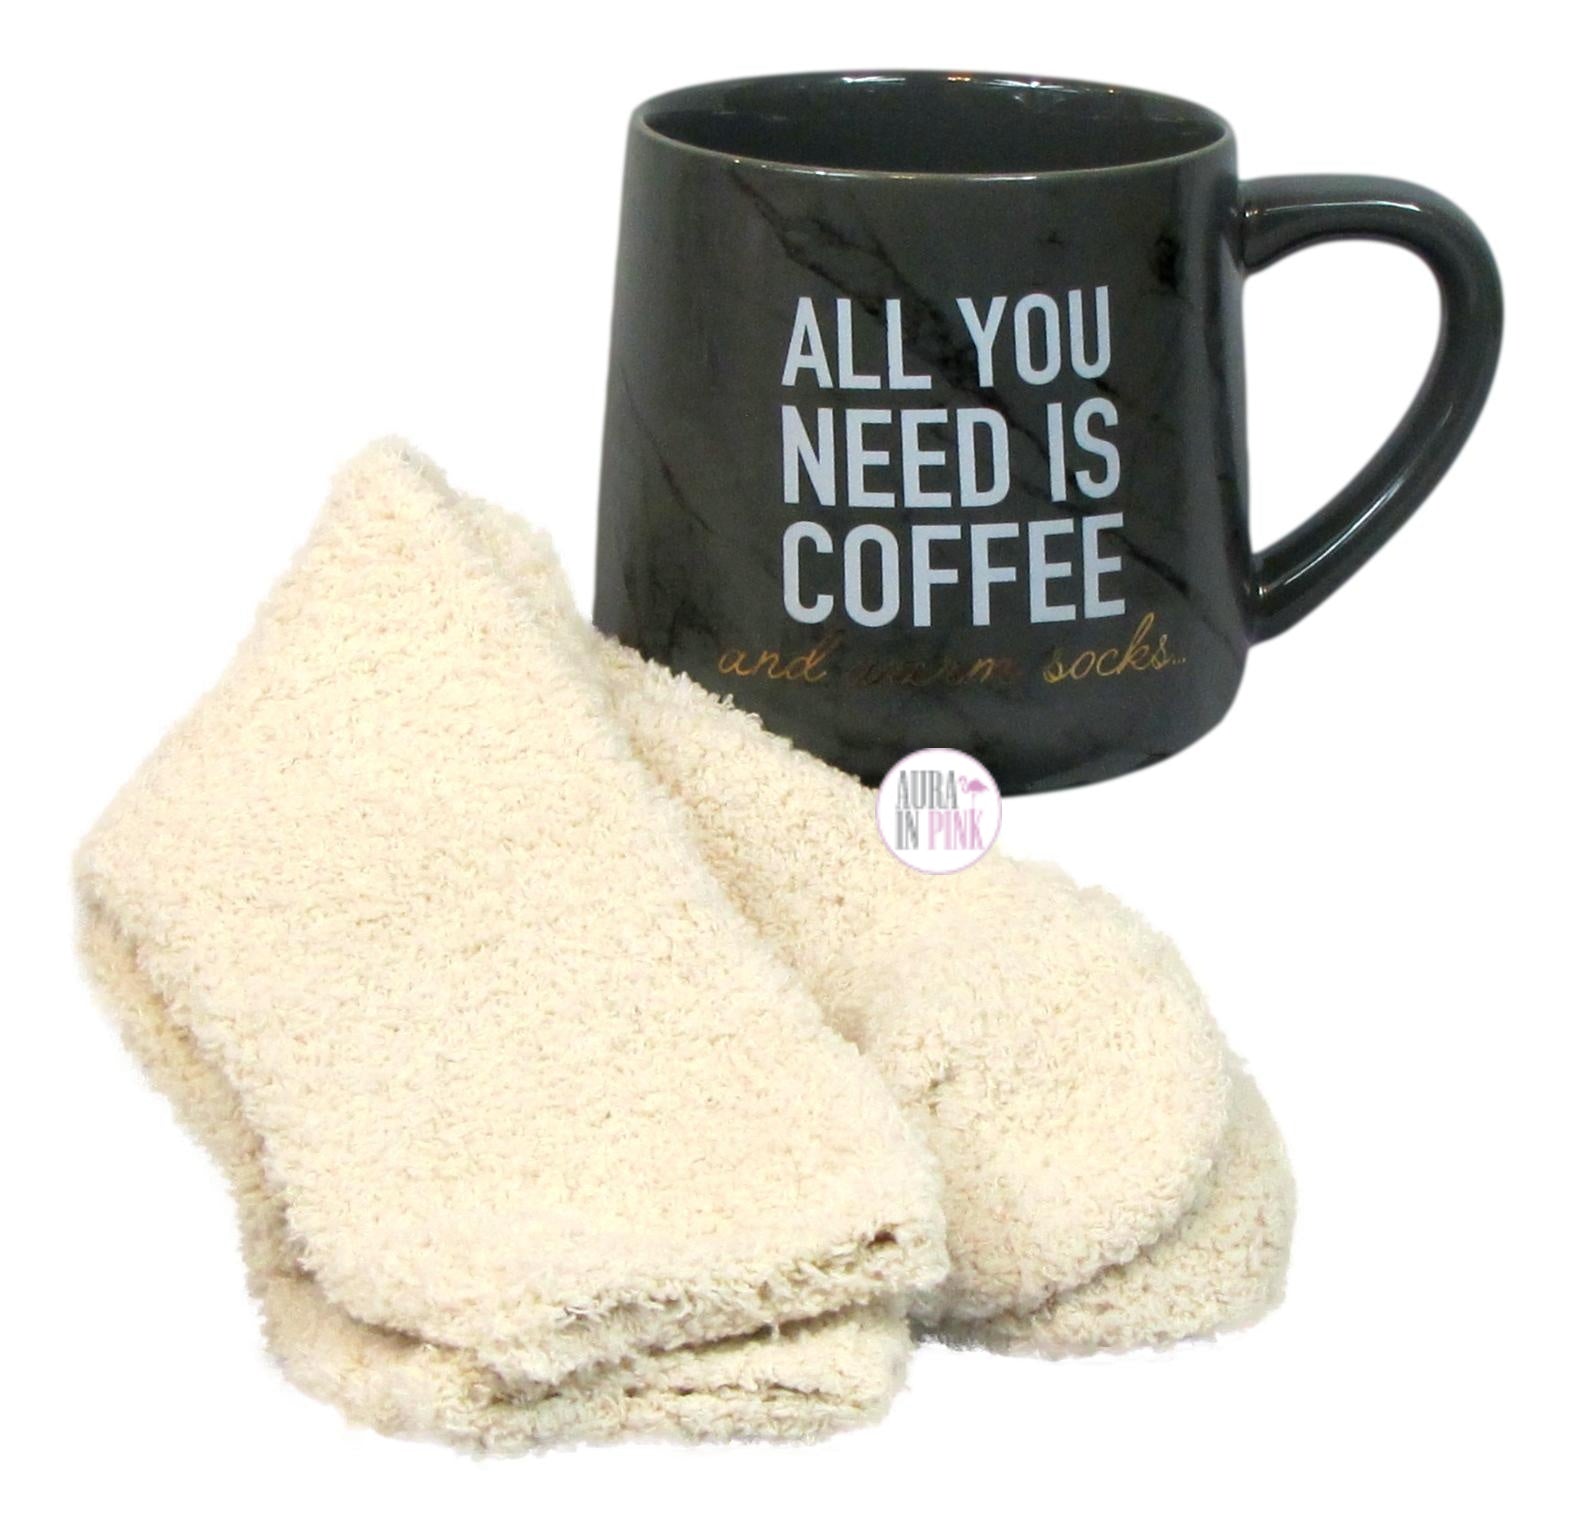 https://www.aurainpink.com/cdn/shop/products/Frankie_Grey_Coffee_Mug_Socks_Set_All_You_Need_Is_Coffee_1W_1024x1024@2x.jpg?v=1607626094